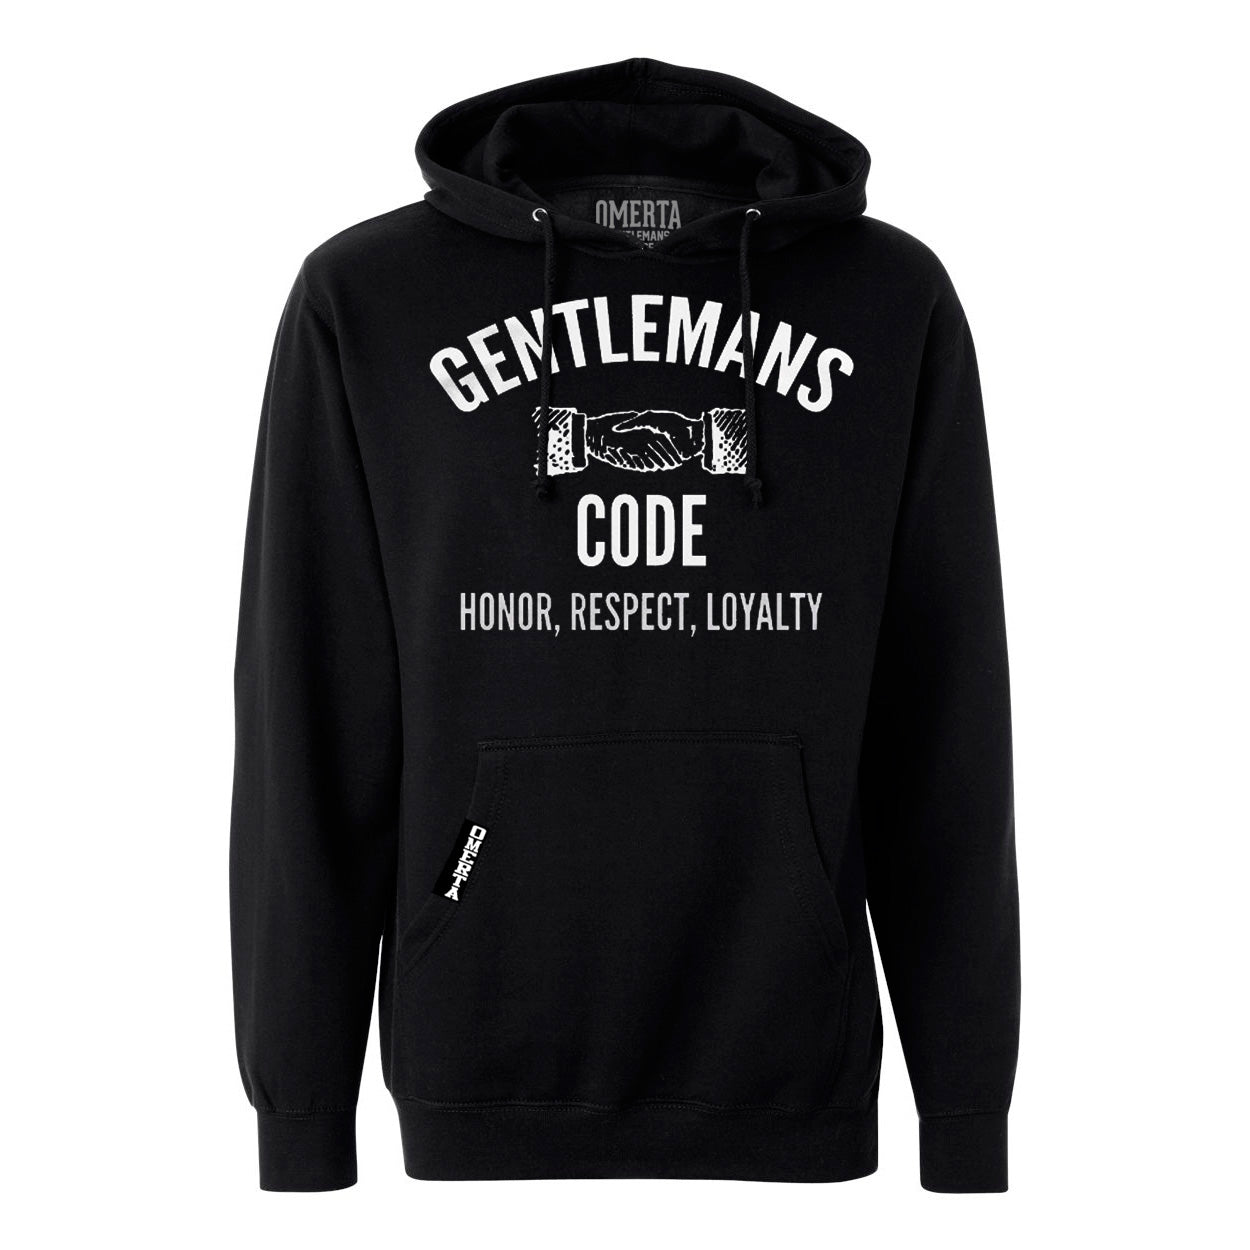 Gentlemans Code Black Pullover Sweatshirt